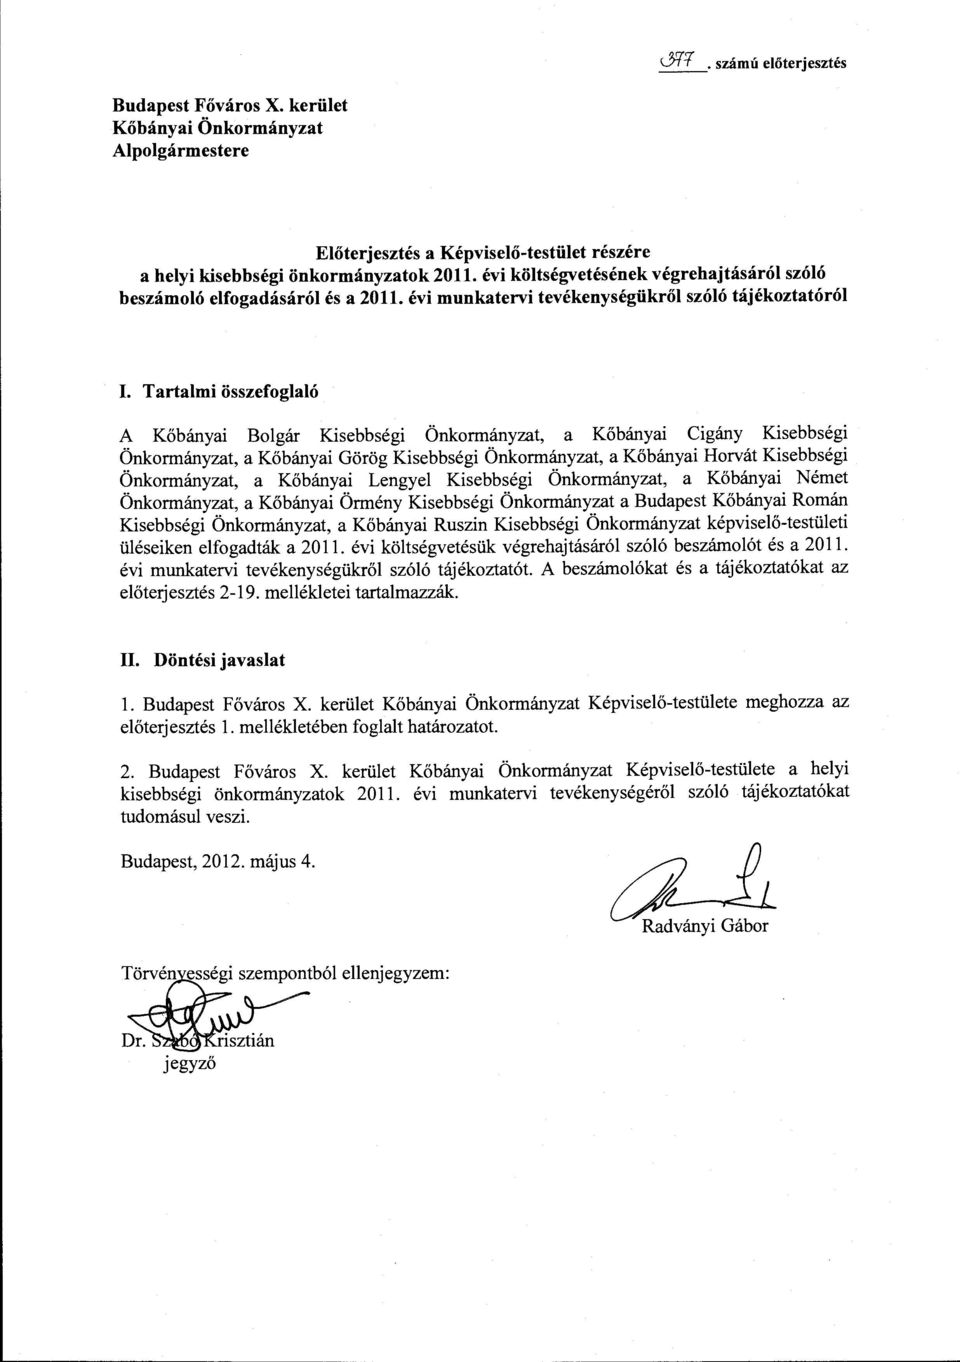 Tartalmi összefoglaló A Kőbányai Bolgár Kisebbségi Önkormányzat, a Kőbányai Cigány Kisebbségi Önkormányzat, a Kőbányai Görög Kisebbségi Önkormányzat, a Kőbányai Horvát Kisebbségi Önkormányzat, a